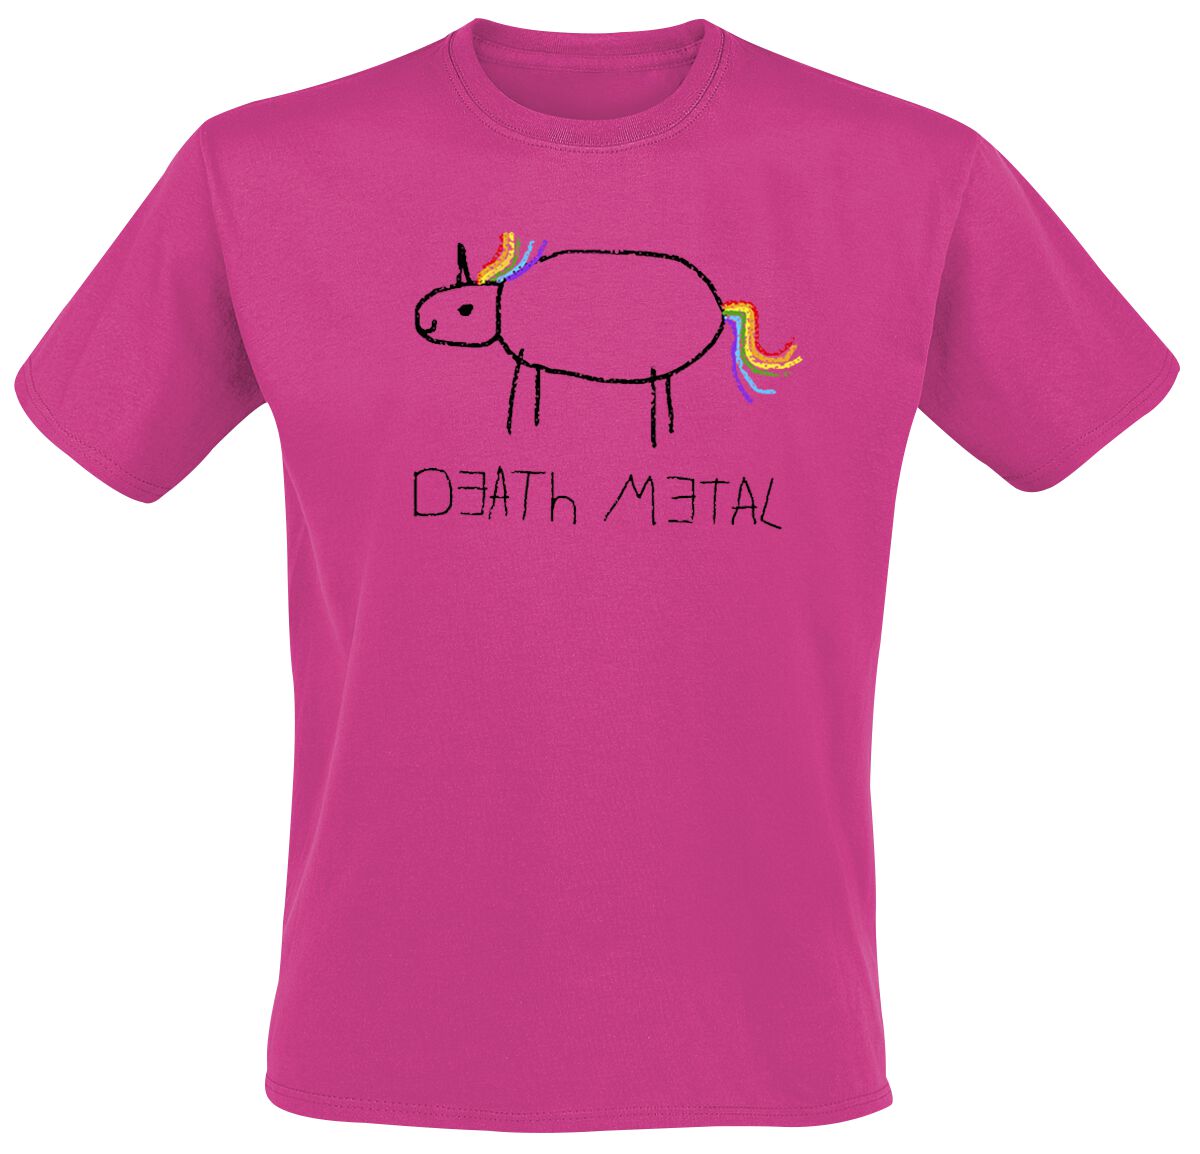 Death Metal T-Shirt - S bis L - für Männer - Größe S - fuchsia